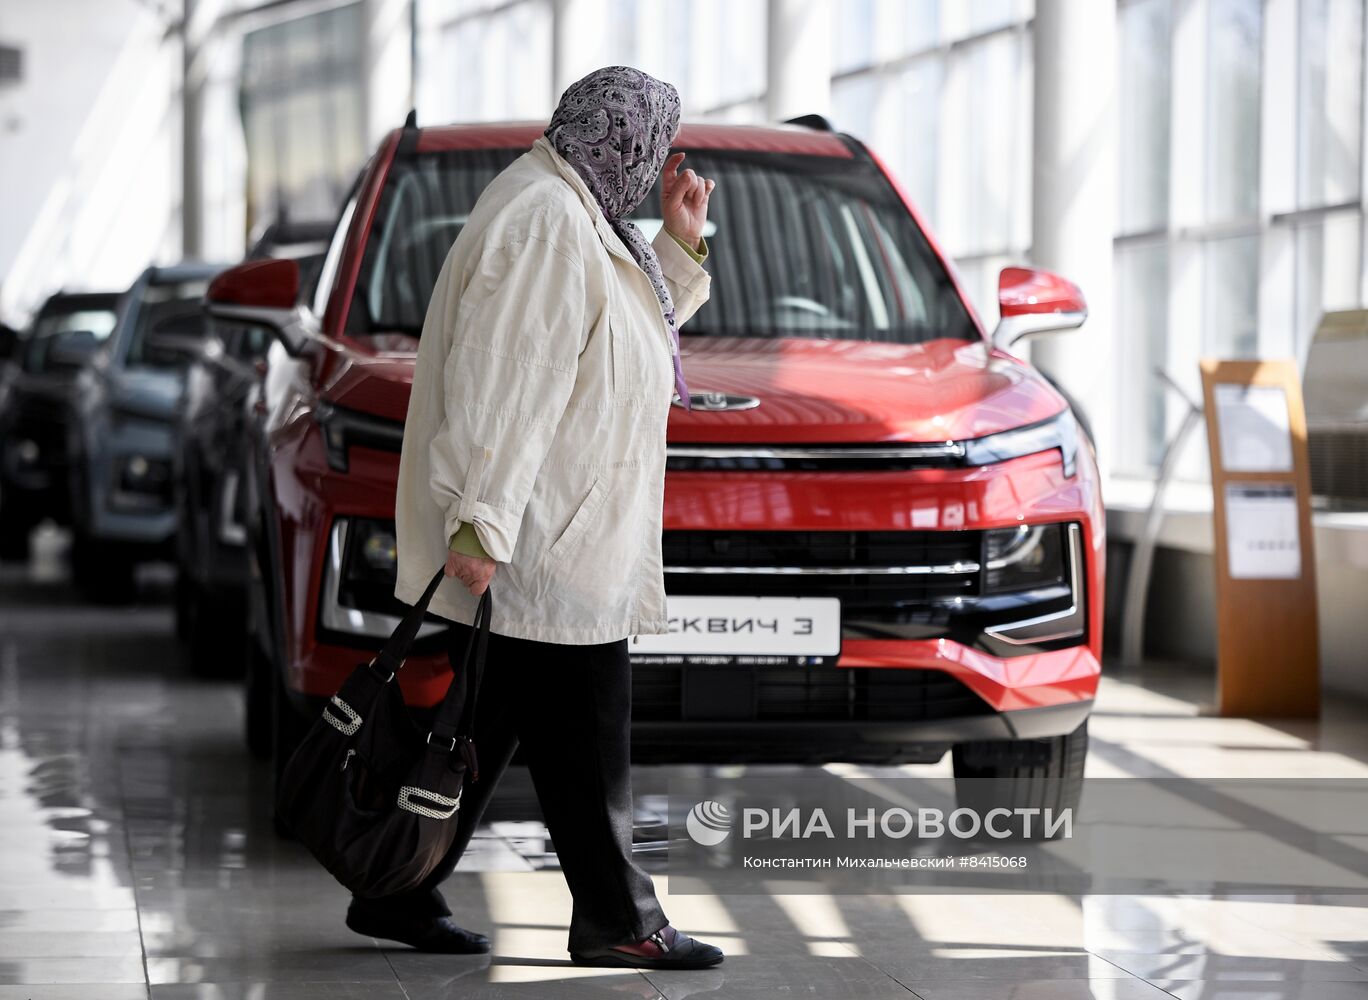 В Симферополе начались продажи автомобилей "Москвич"